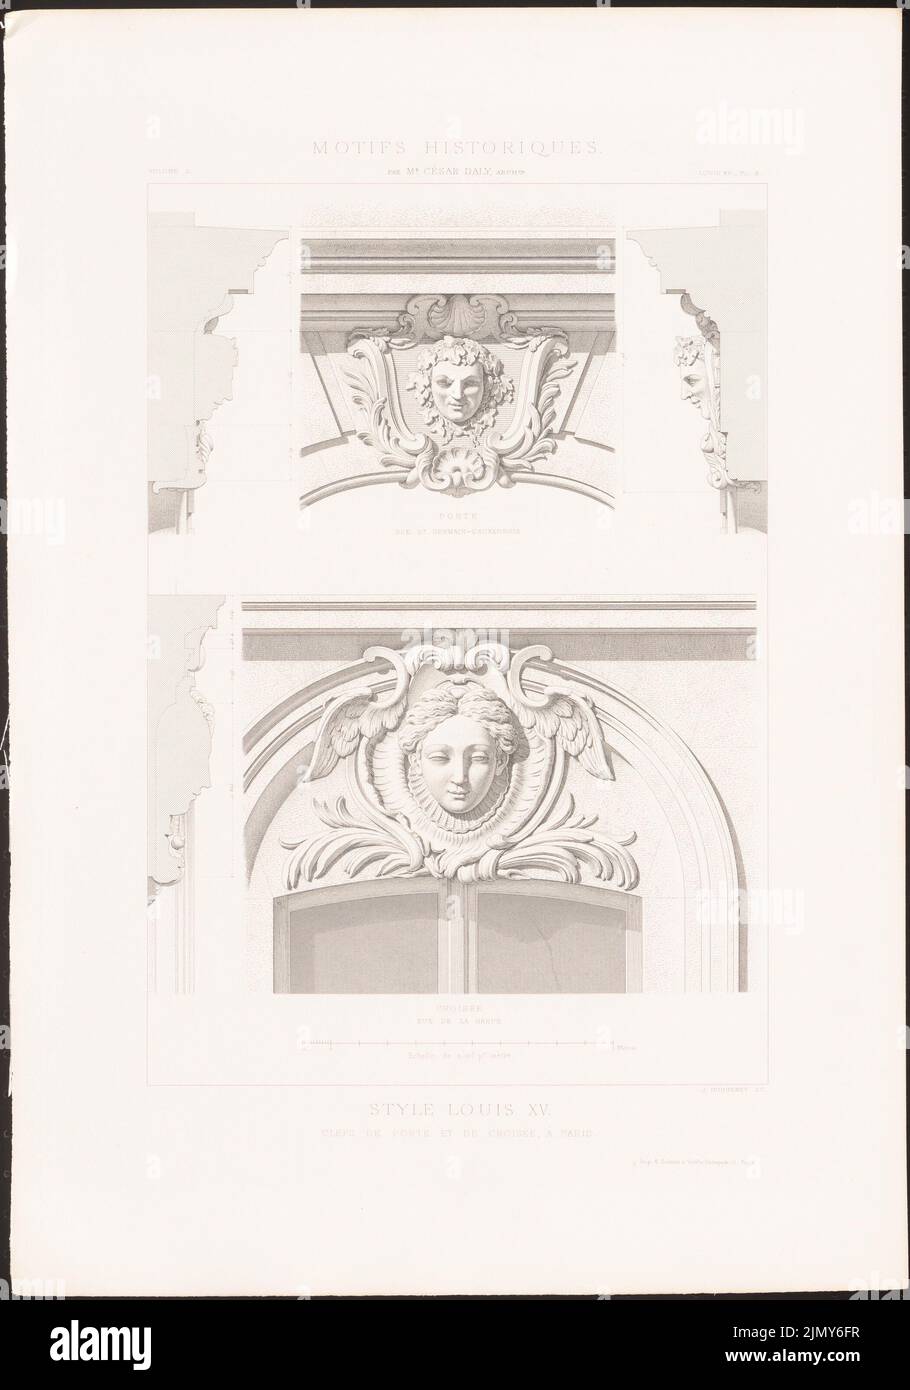 N.N., Schlüssel von Tür und Kreuzung, Paris. (AUS: Historische Motive der Architektur und Ornamentskulptur, HRSG.V. César Daly, BD.2, Paris 1870.) (1870-1870): Ansichten. Stich AUF Papier, 45,5 x 31,8 cm (inkl. Scanränder). Sie archikturmuseum Inv. Nr. B 1925,028. Stockfoto